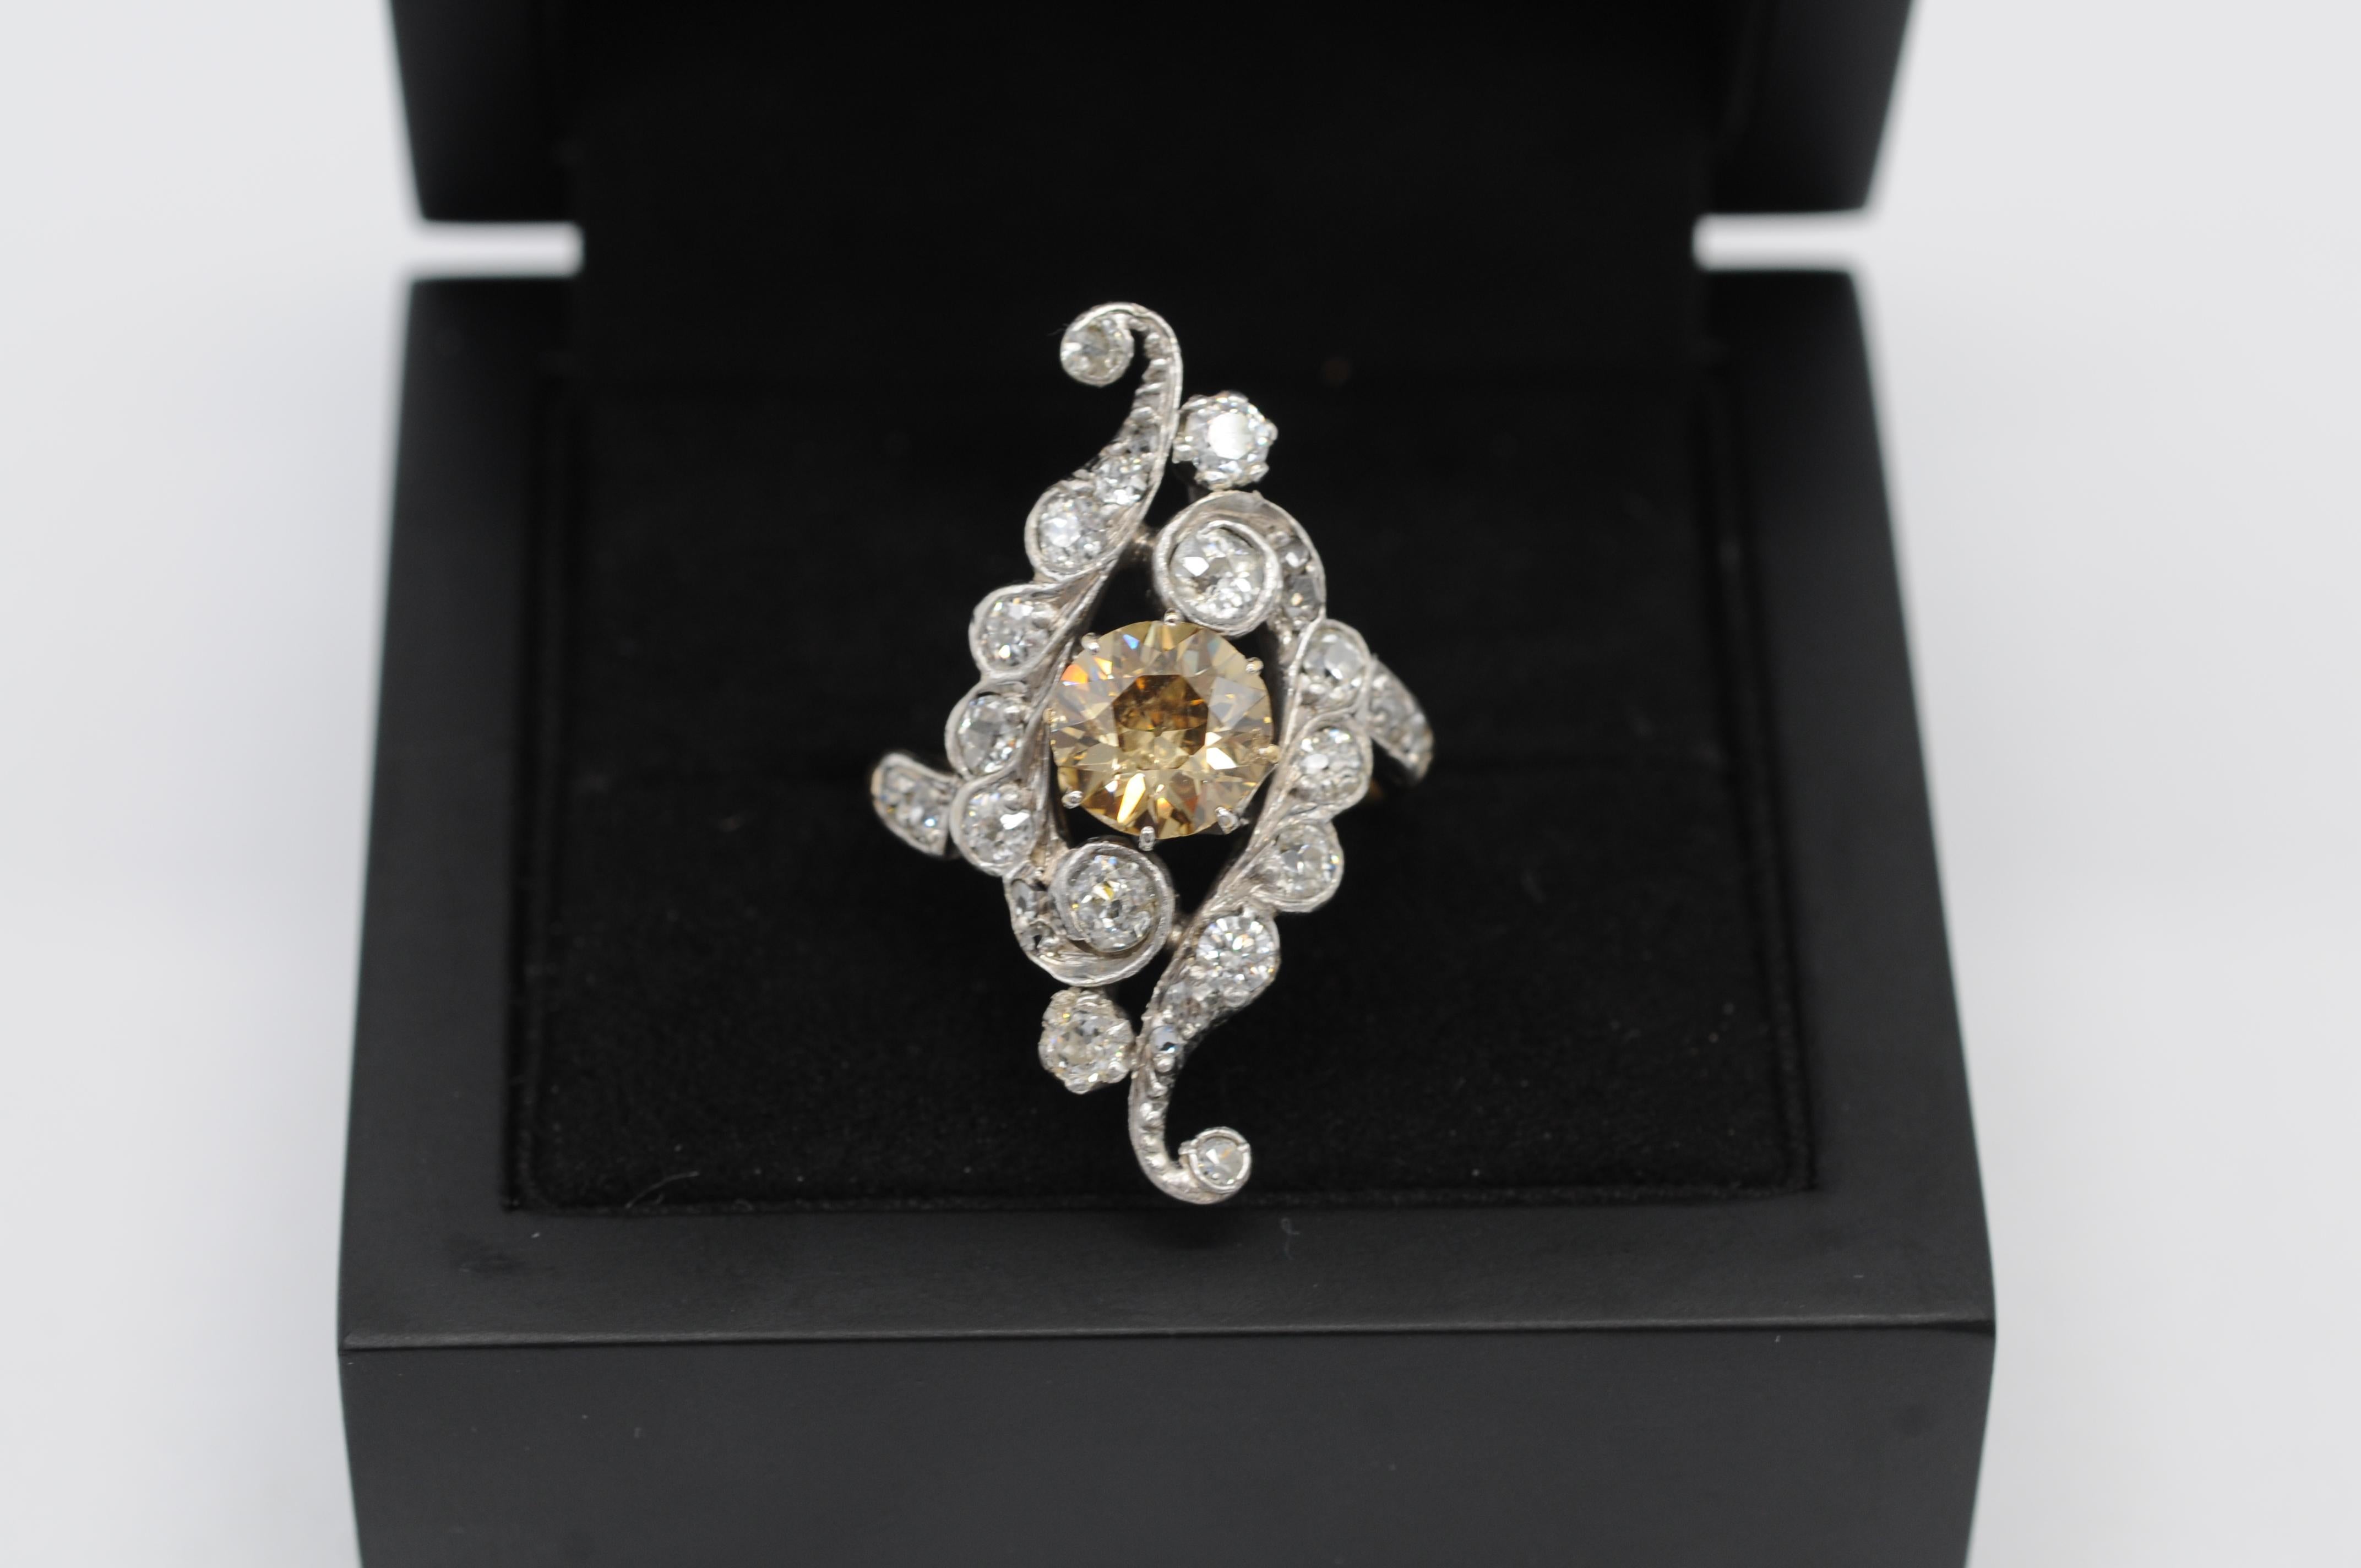 Erleben Sie die bezaubernde Anziehungskraft dieses Art-Déco-Clusterrings mit einem fesselnden braunen Fancy-Diamanten in einer Fassung aus 18 Karat Weiß- und Gelbgold. Dieses Schmuckstück vereint nahtlos Stil, Charme, Finesse und Schönheit und